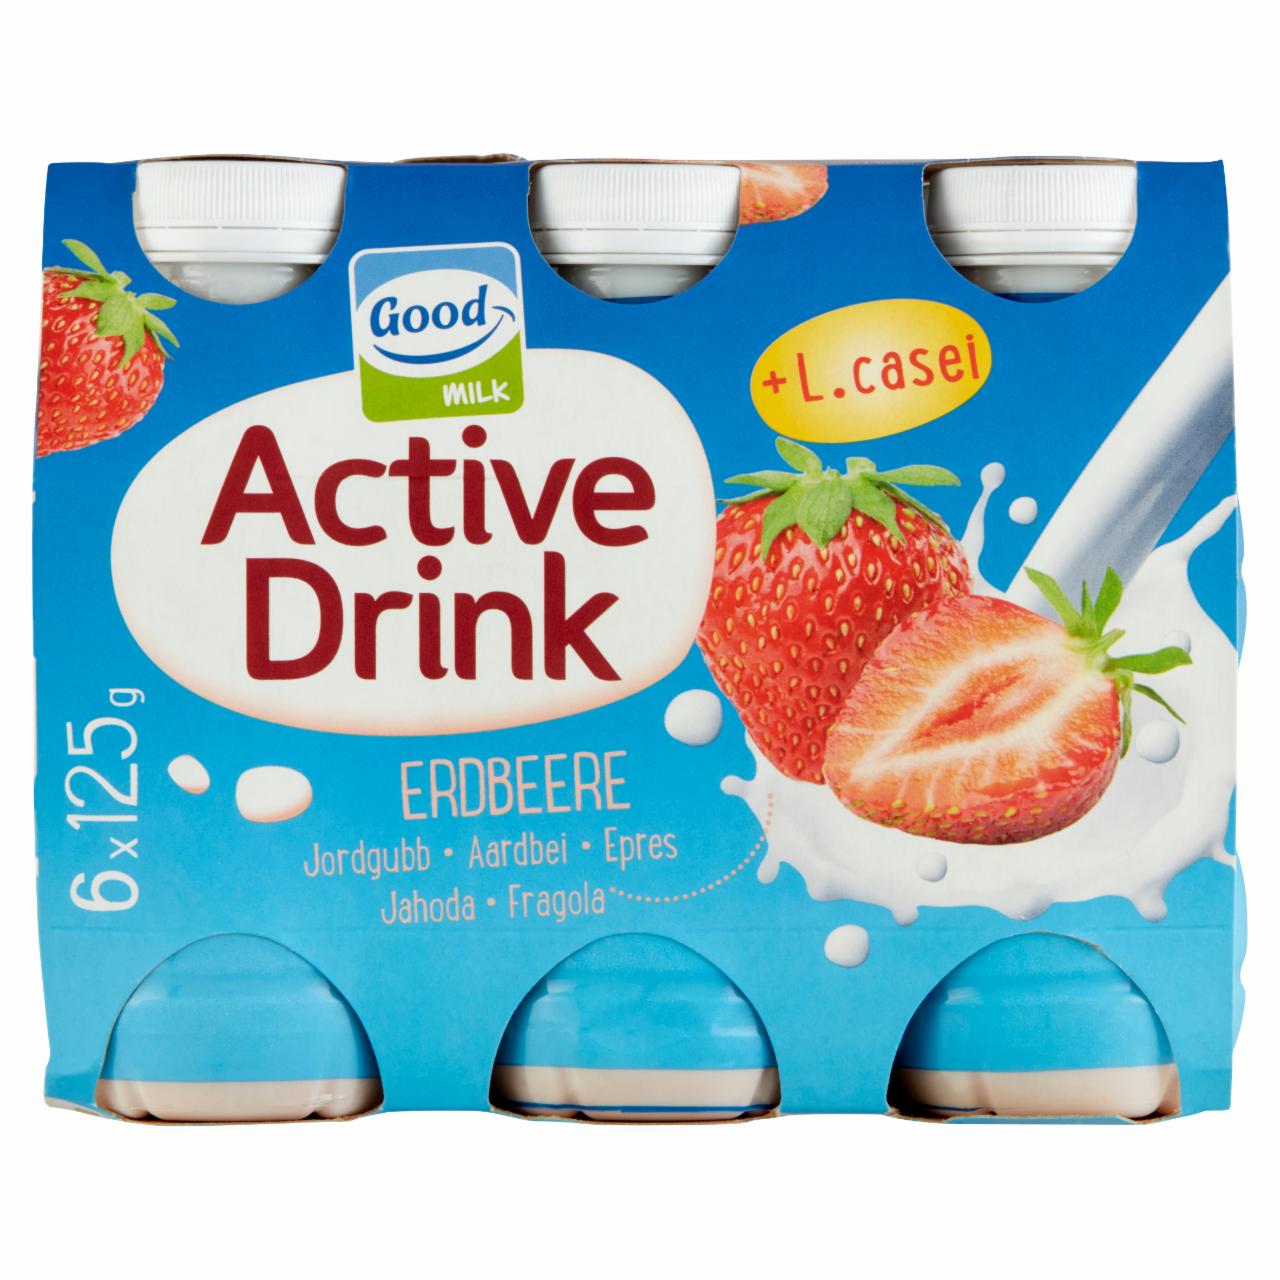 Képek - Good Milk Active Drink epres zsírszegény joghurtital 6 x 125 g (750 g)